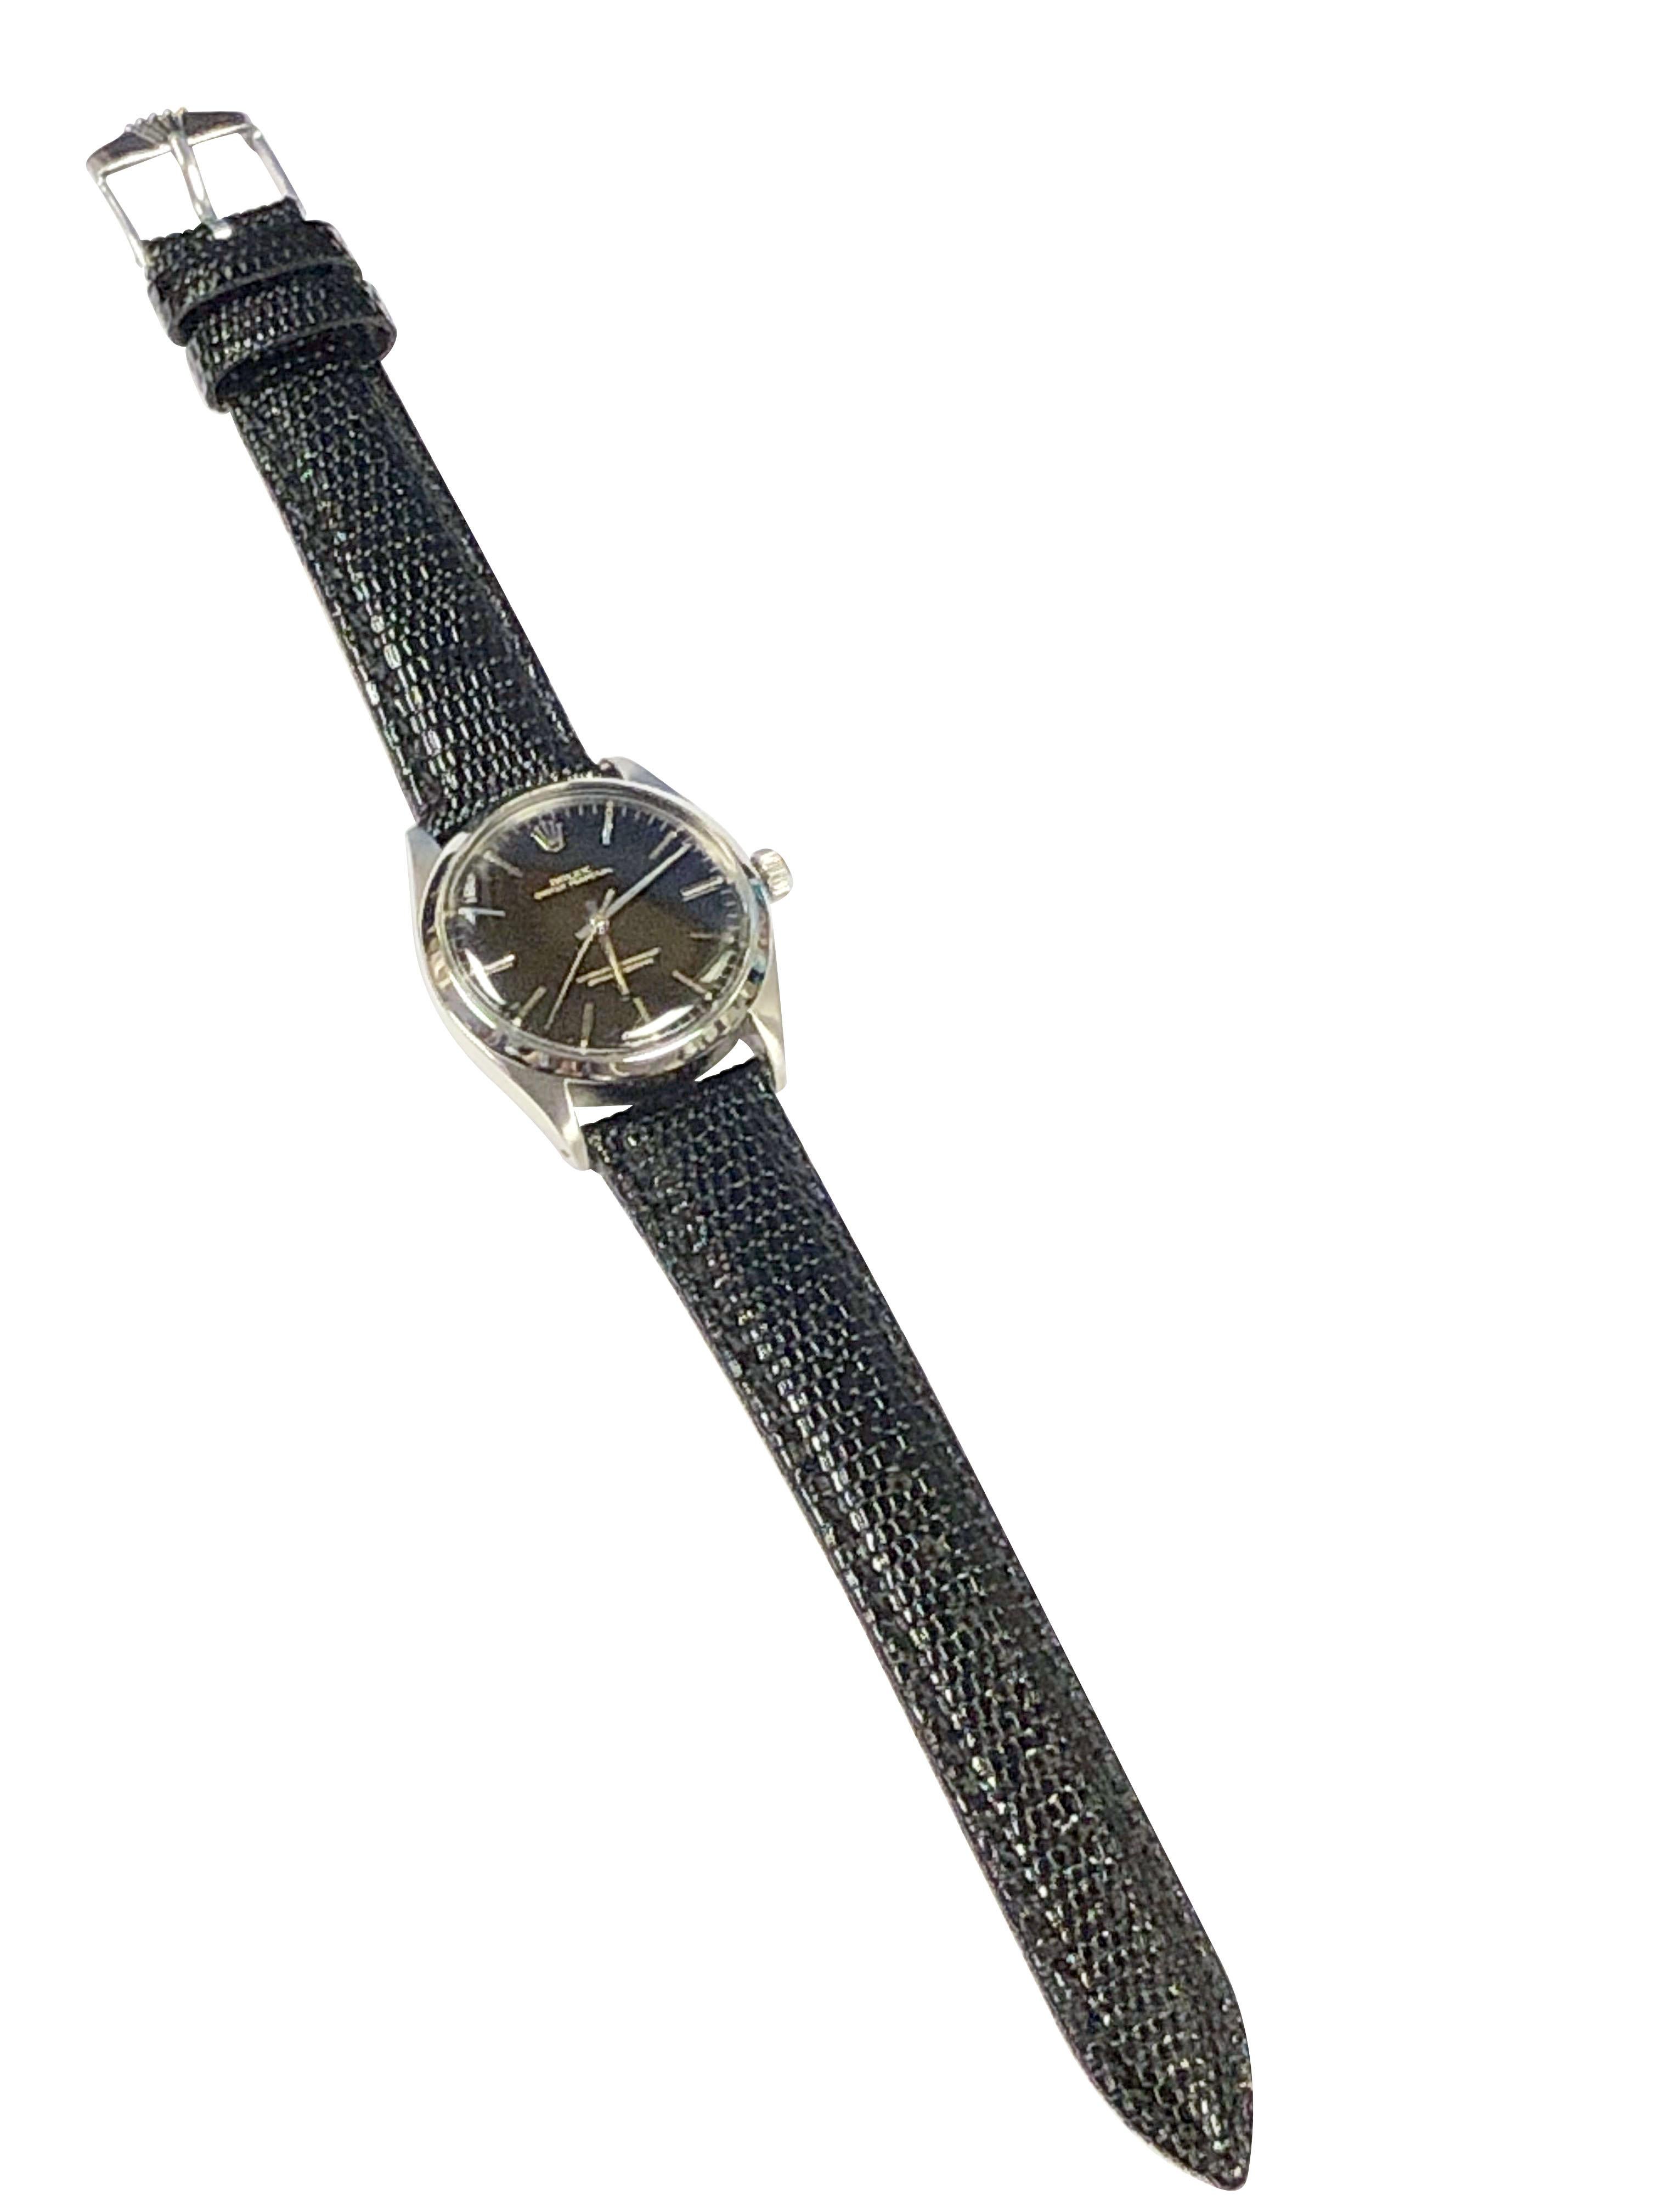 Rolex Ref 1002 1950s Steel Self Winding Wrist Watch 2